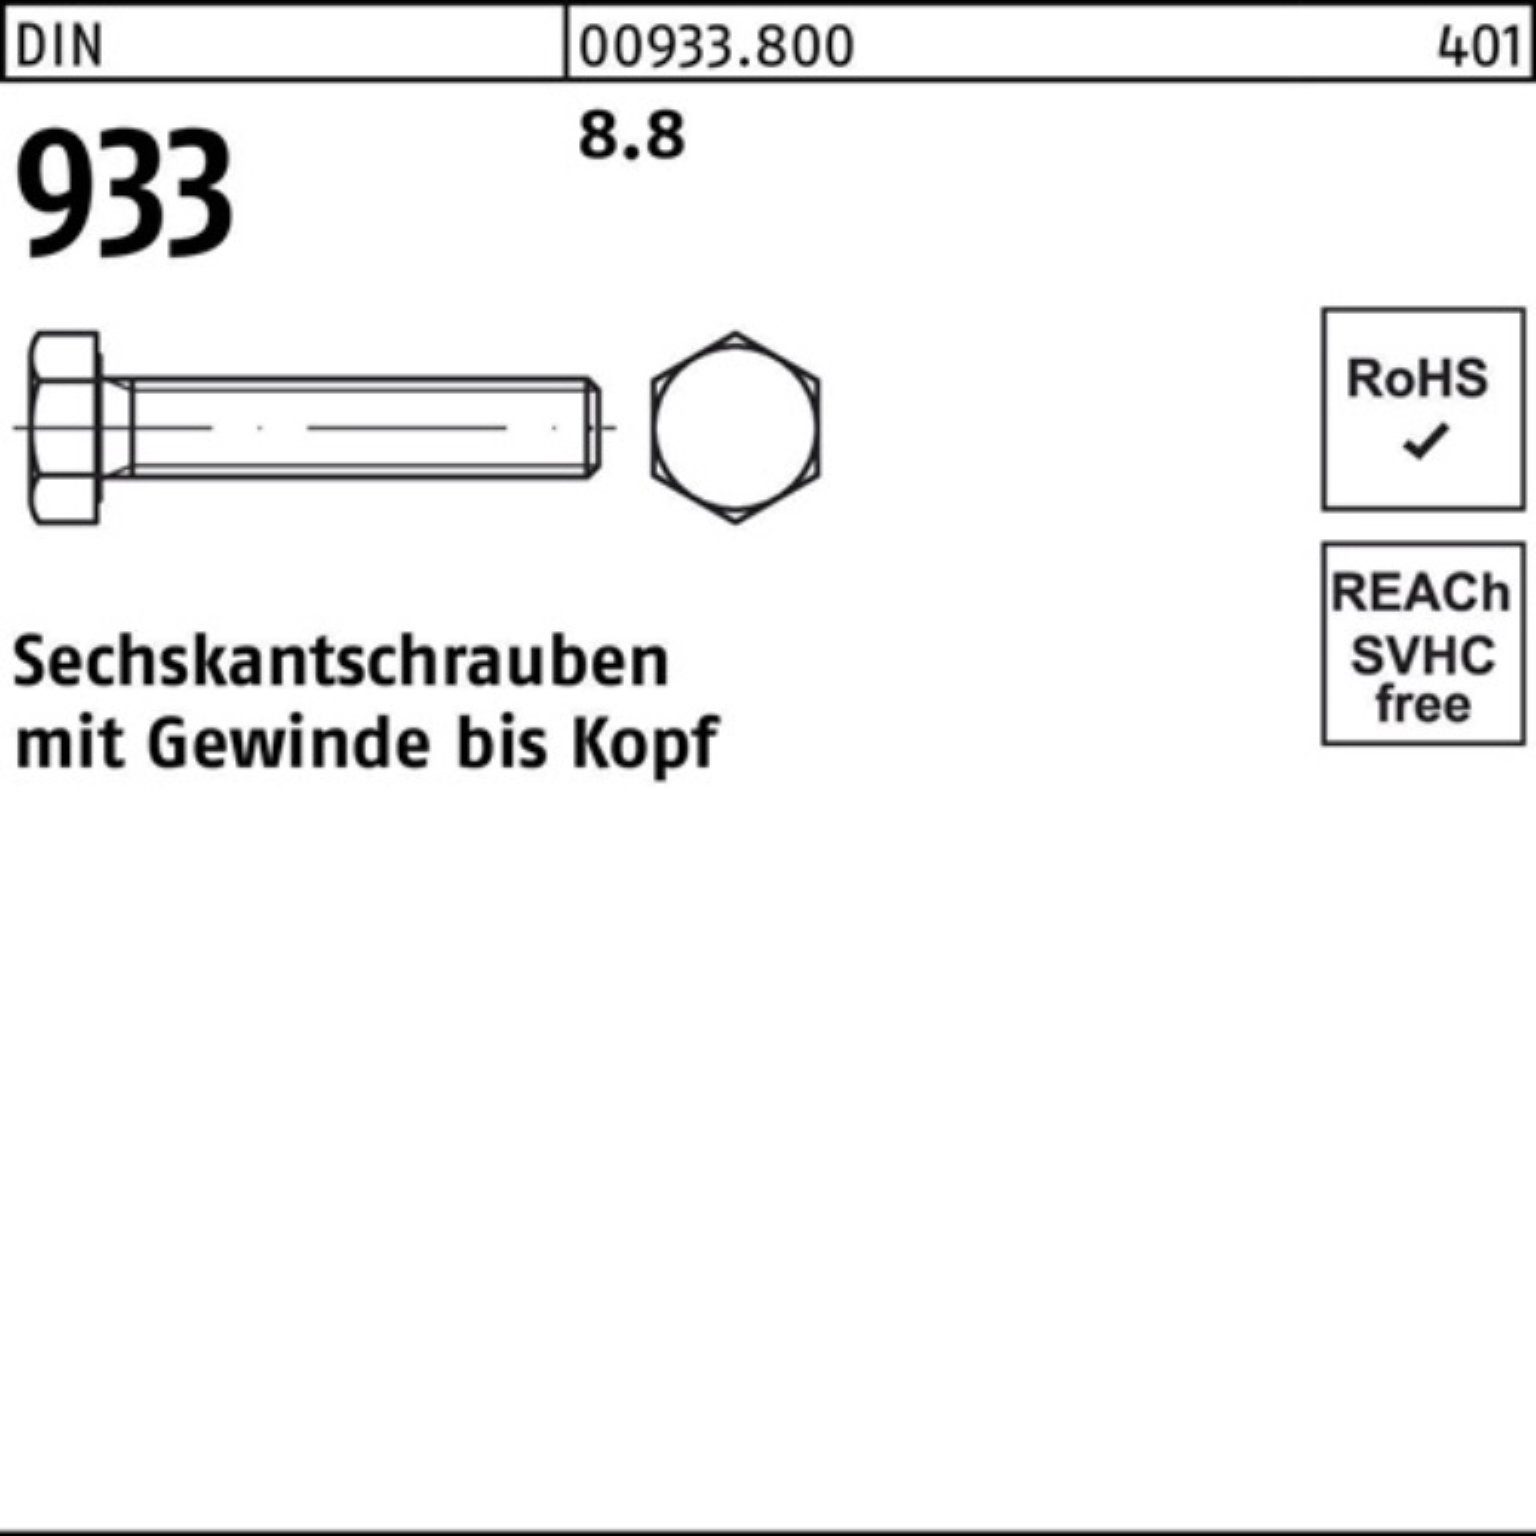 Stück 100 Reyher 100er VG Sechskantschraube DIN 8.8 Sechskantschraube Pack DIN M4x 933 50 933